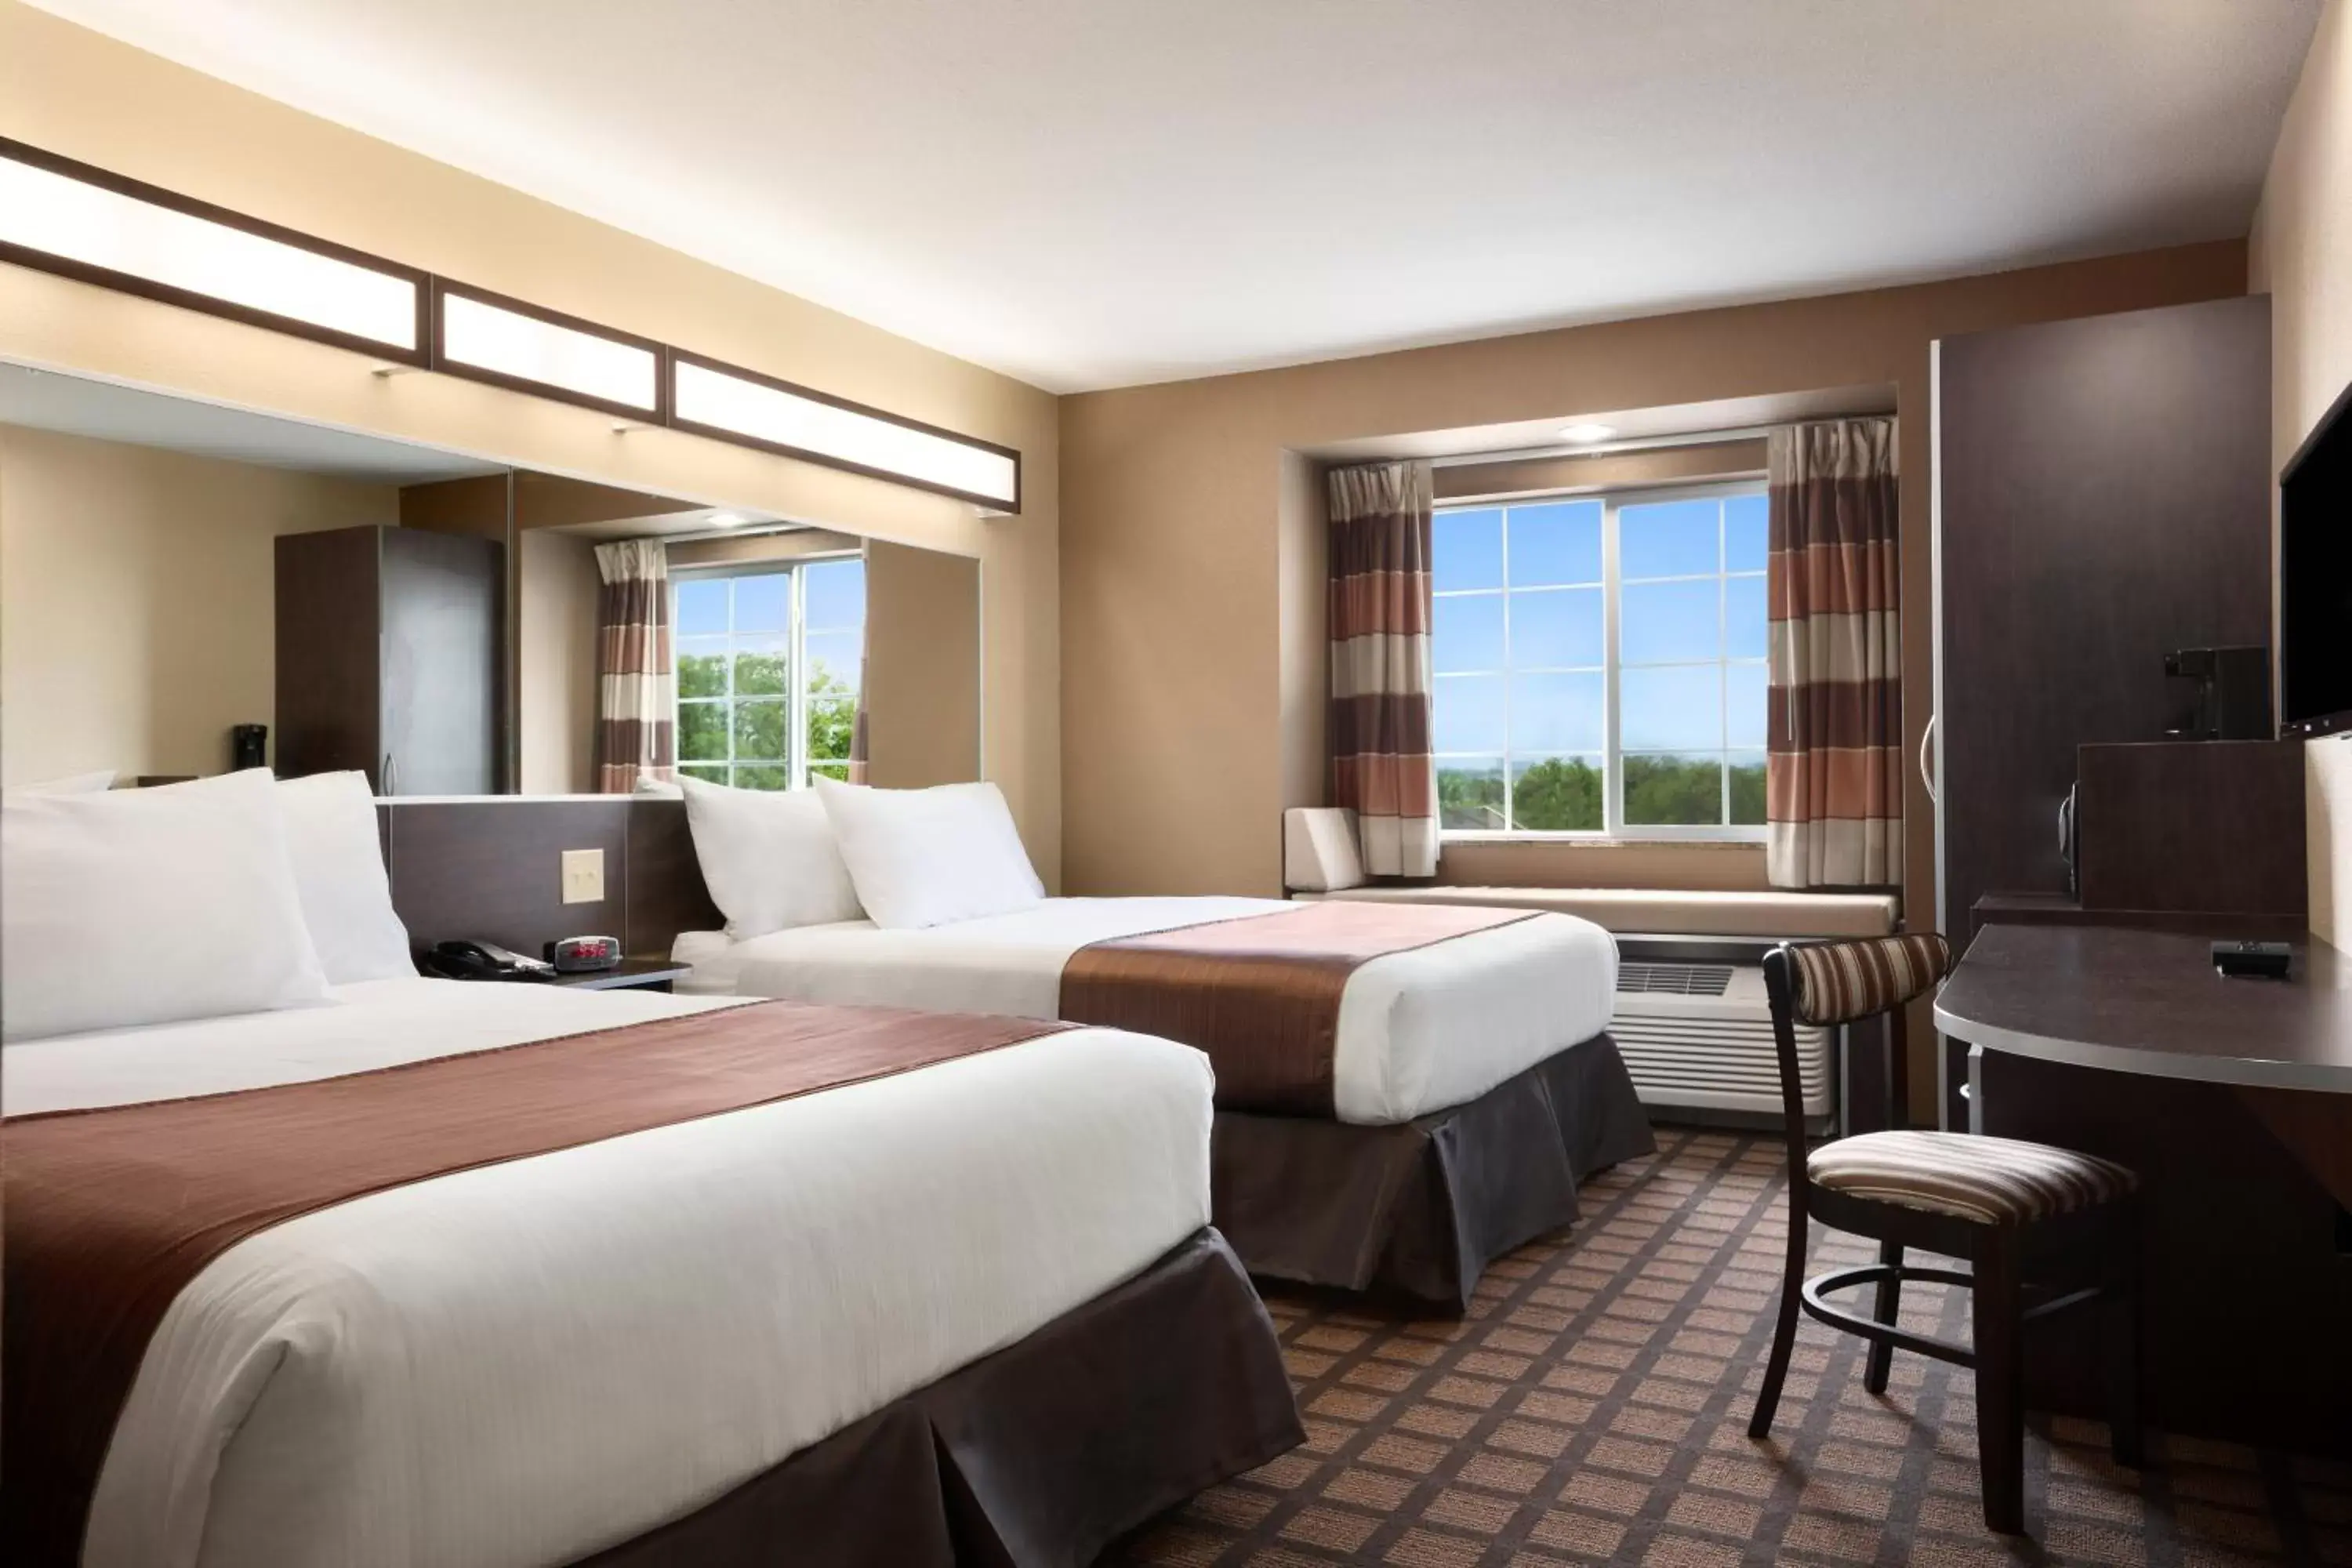 Bedroom in Microtel Inn & Suites Pleasanton